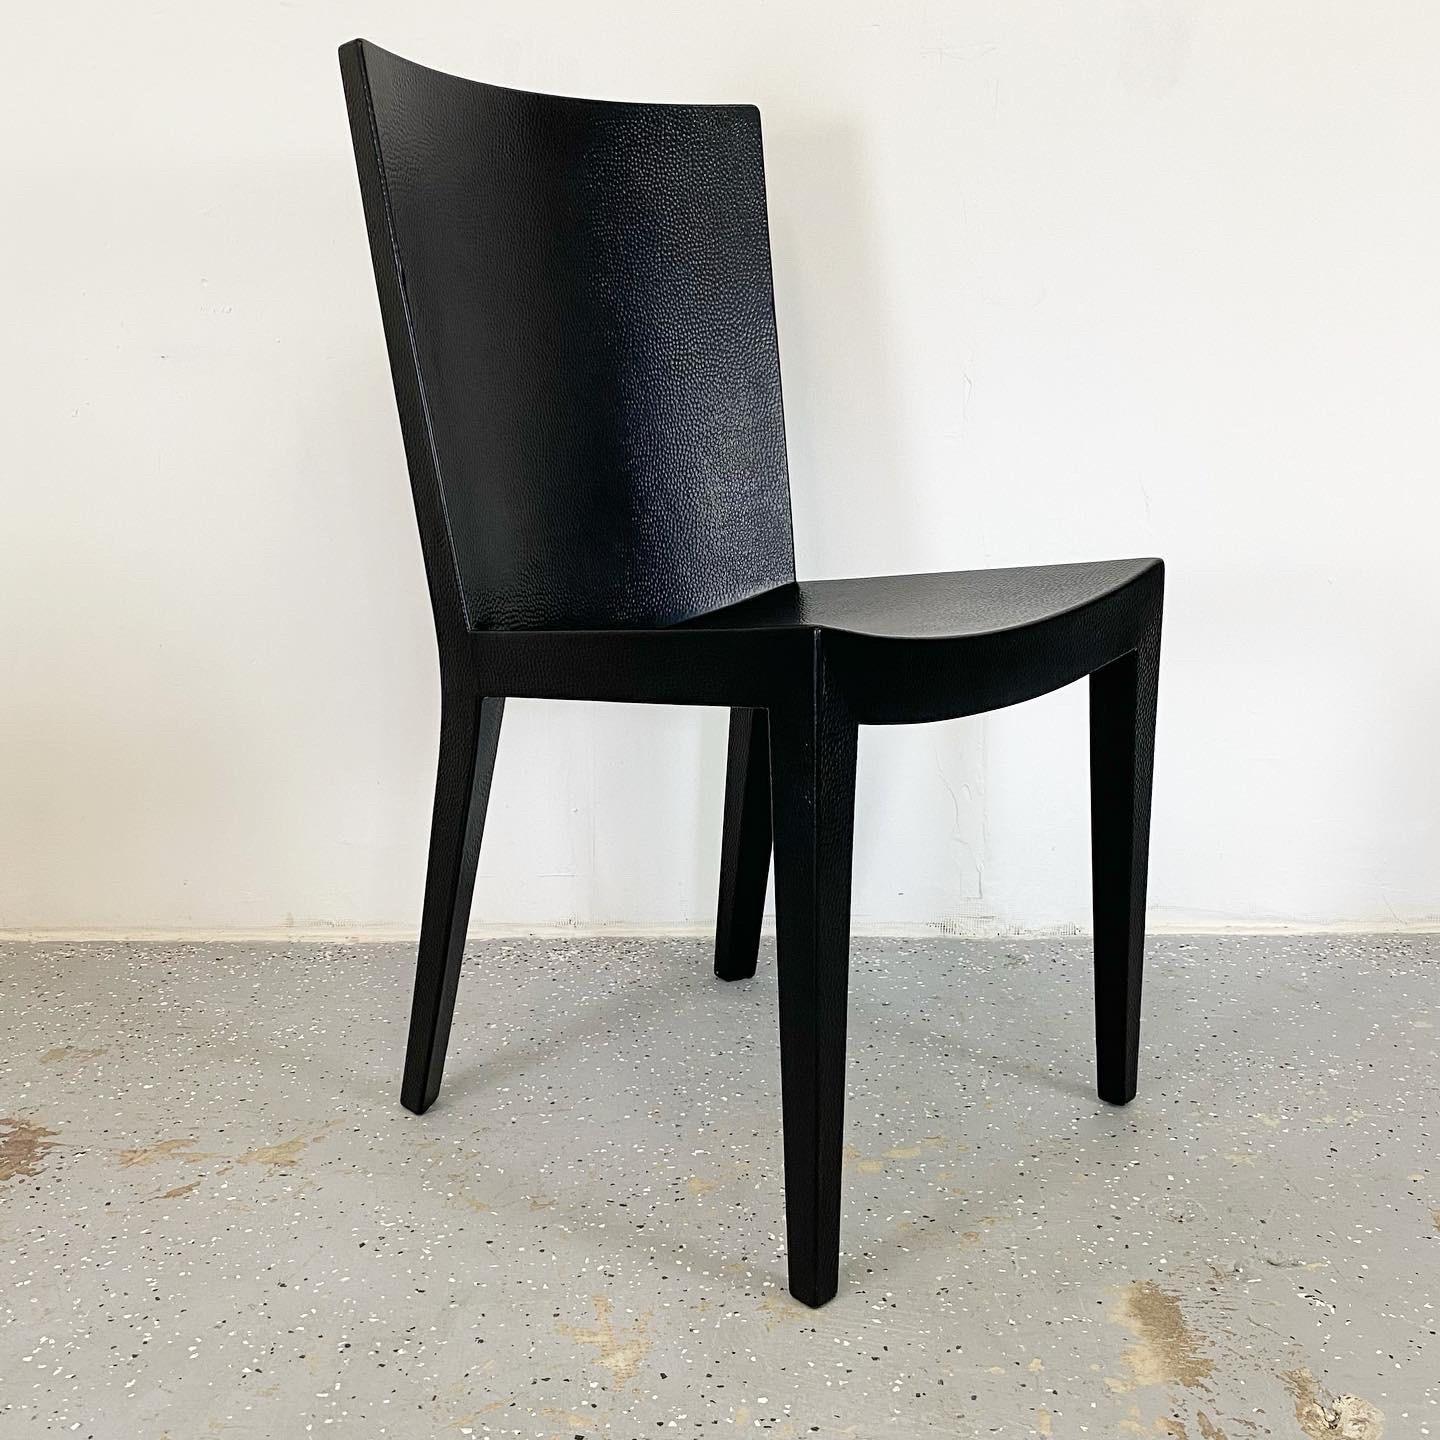 Ein beeindruckender restaurierter Satz Jean-Michel Frank-Stühle von Karl Springer. Diese haben Reptilienhaut gestanzt Leder, neu mit einem matten schwarzen Lack.